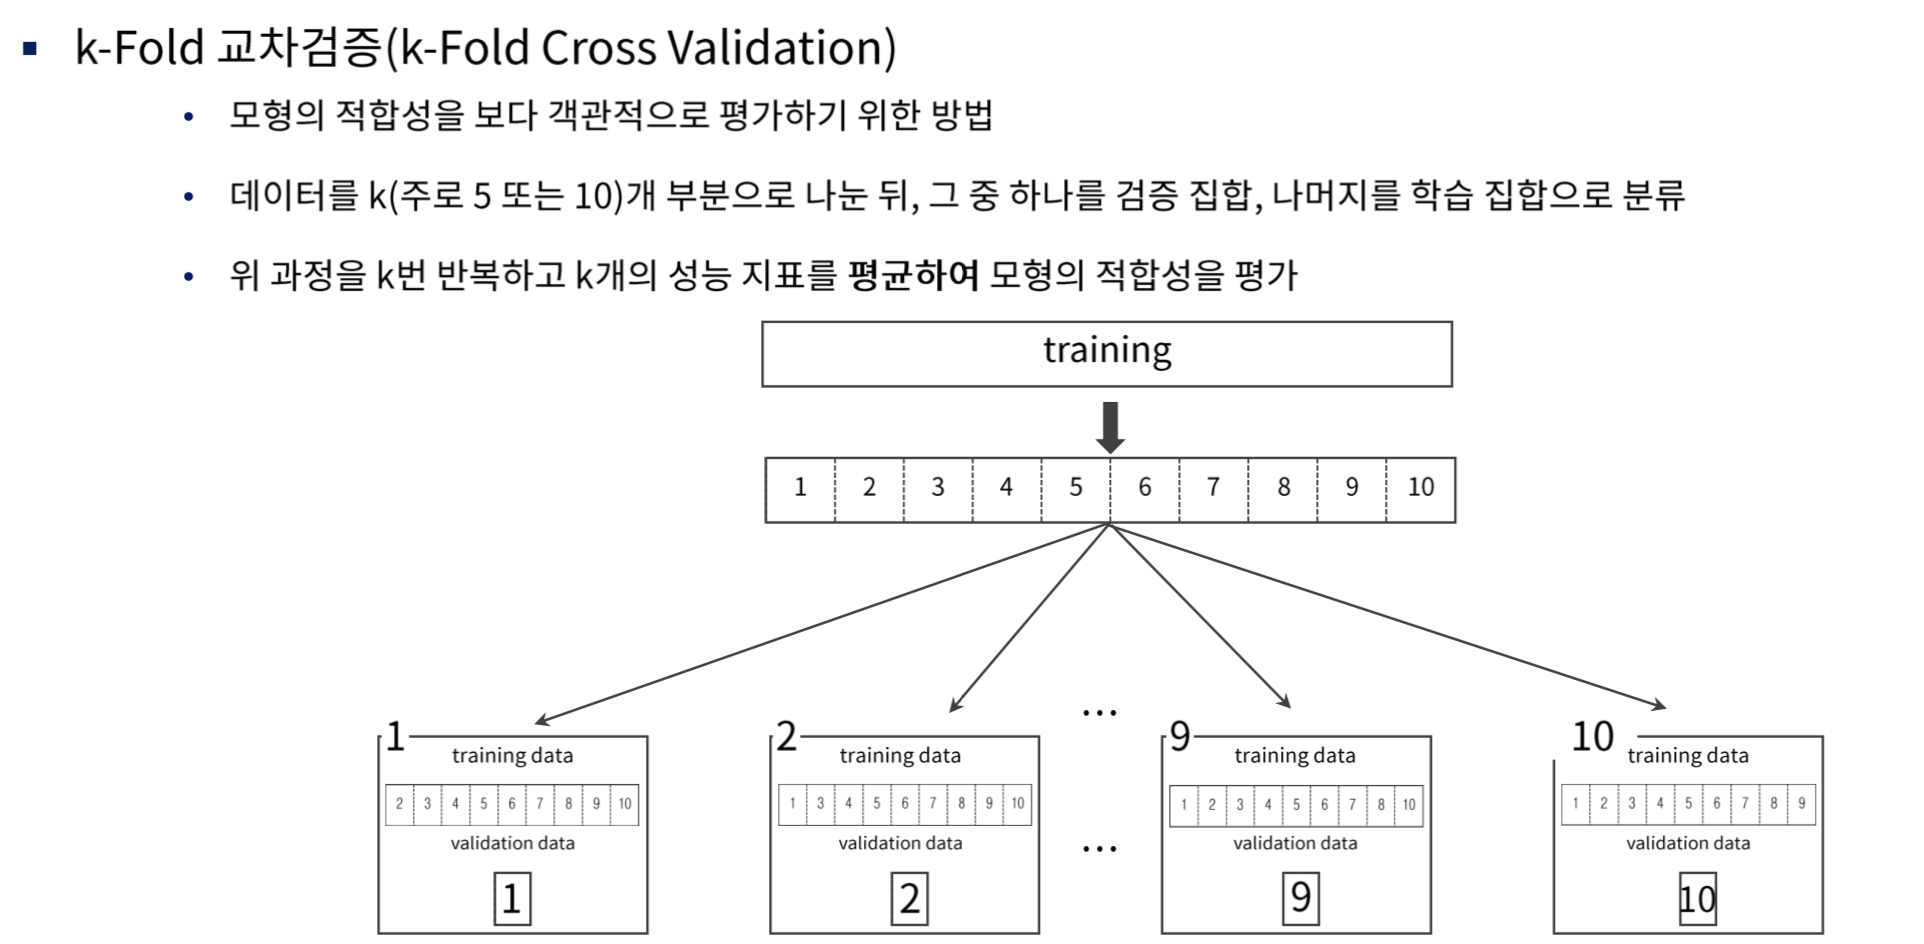 K-hold cross validation